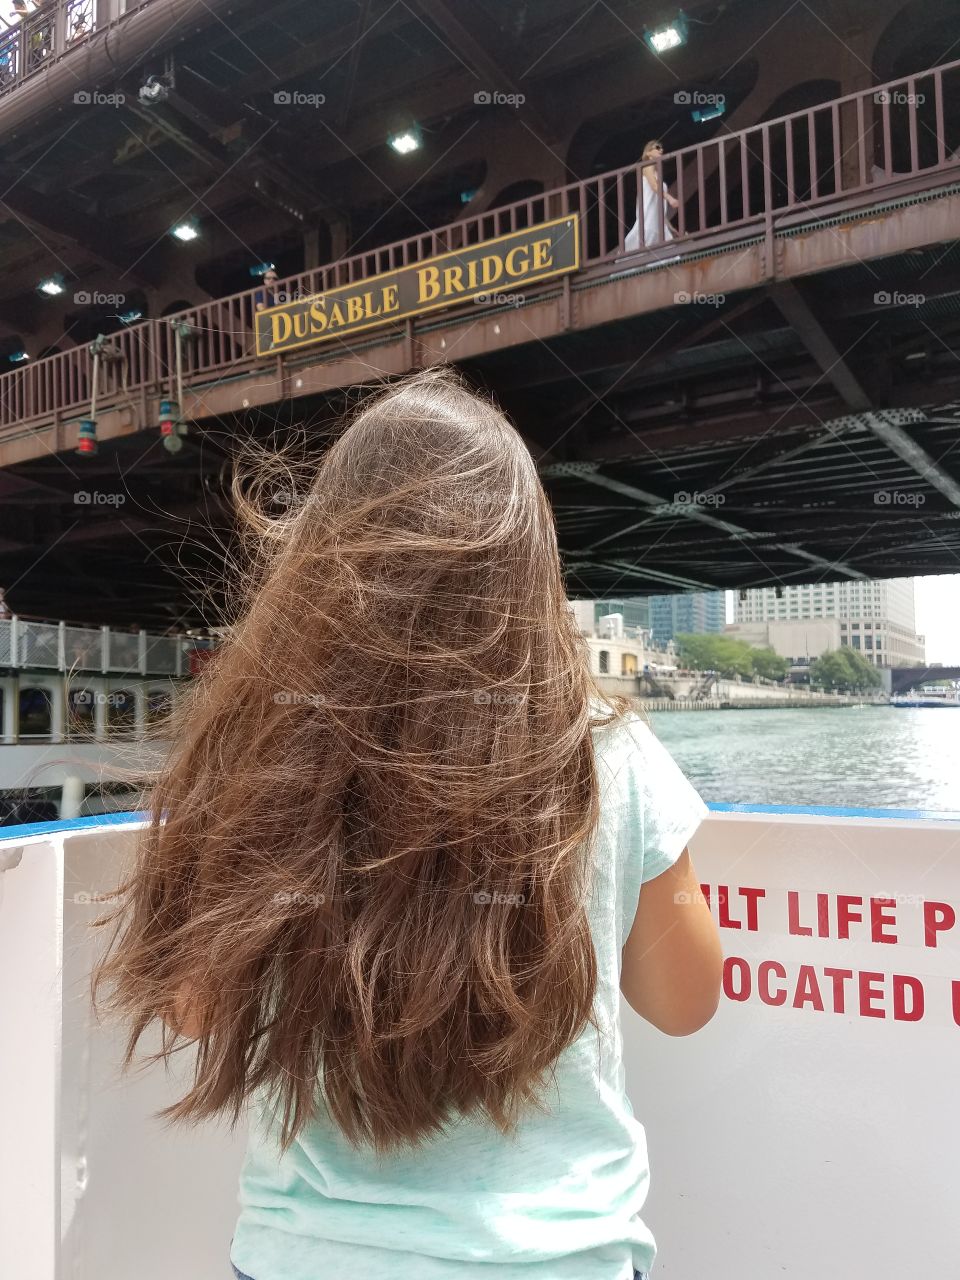 Boat Hair